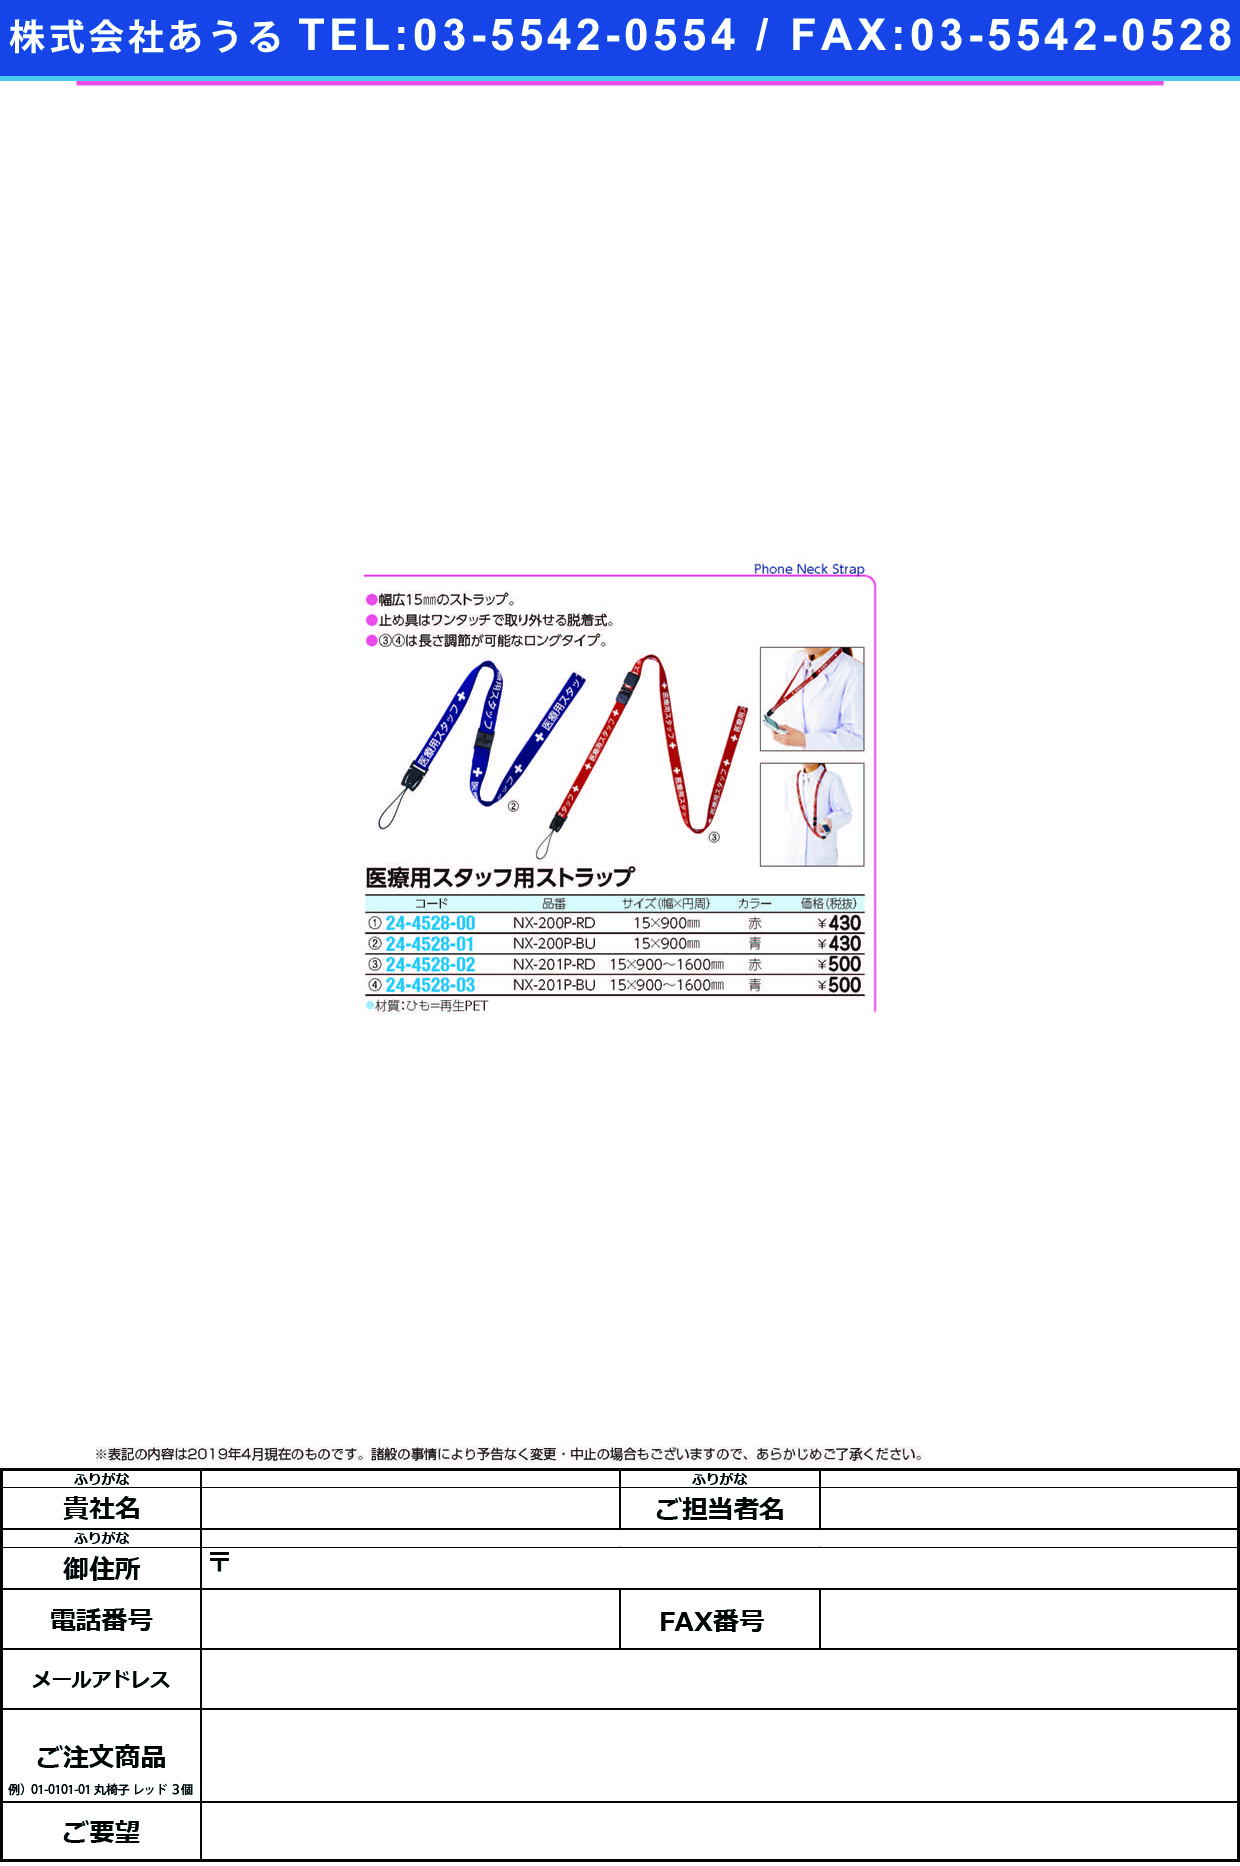 (24-4528-01)医療用スタッフストラップ９００ｍｍ NX-200P-BU(ﾌﾞﾙｰ) ｲﾘｮｳﾖｳｽﾀｯﾌｽﾄﾗｯﾌ【1本単位】【2019年カタログ商品】